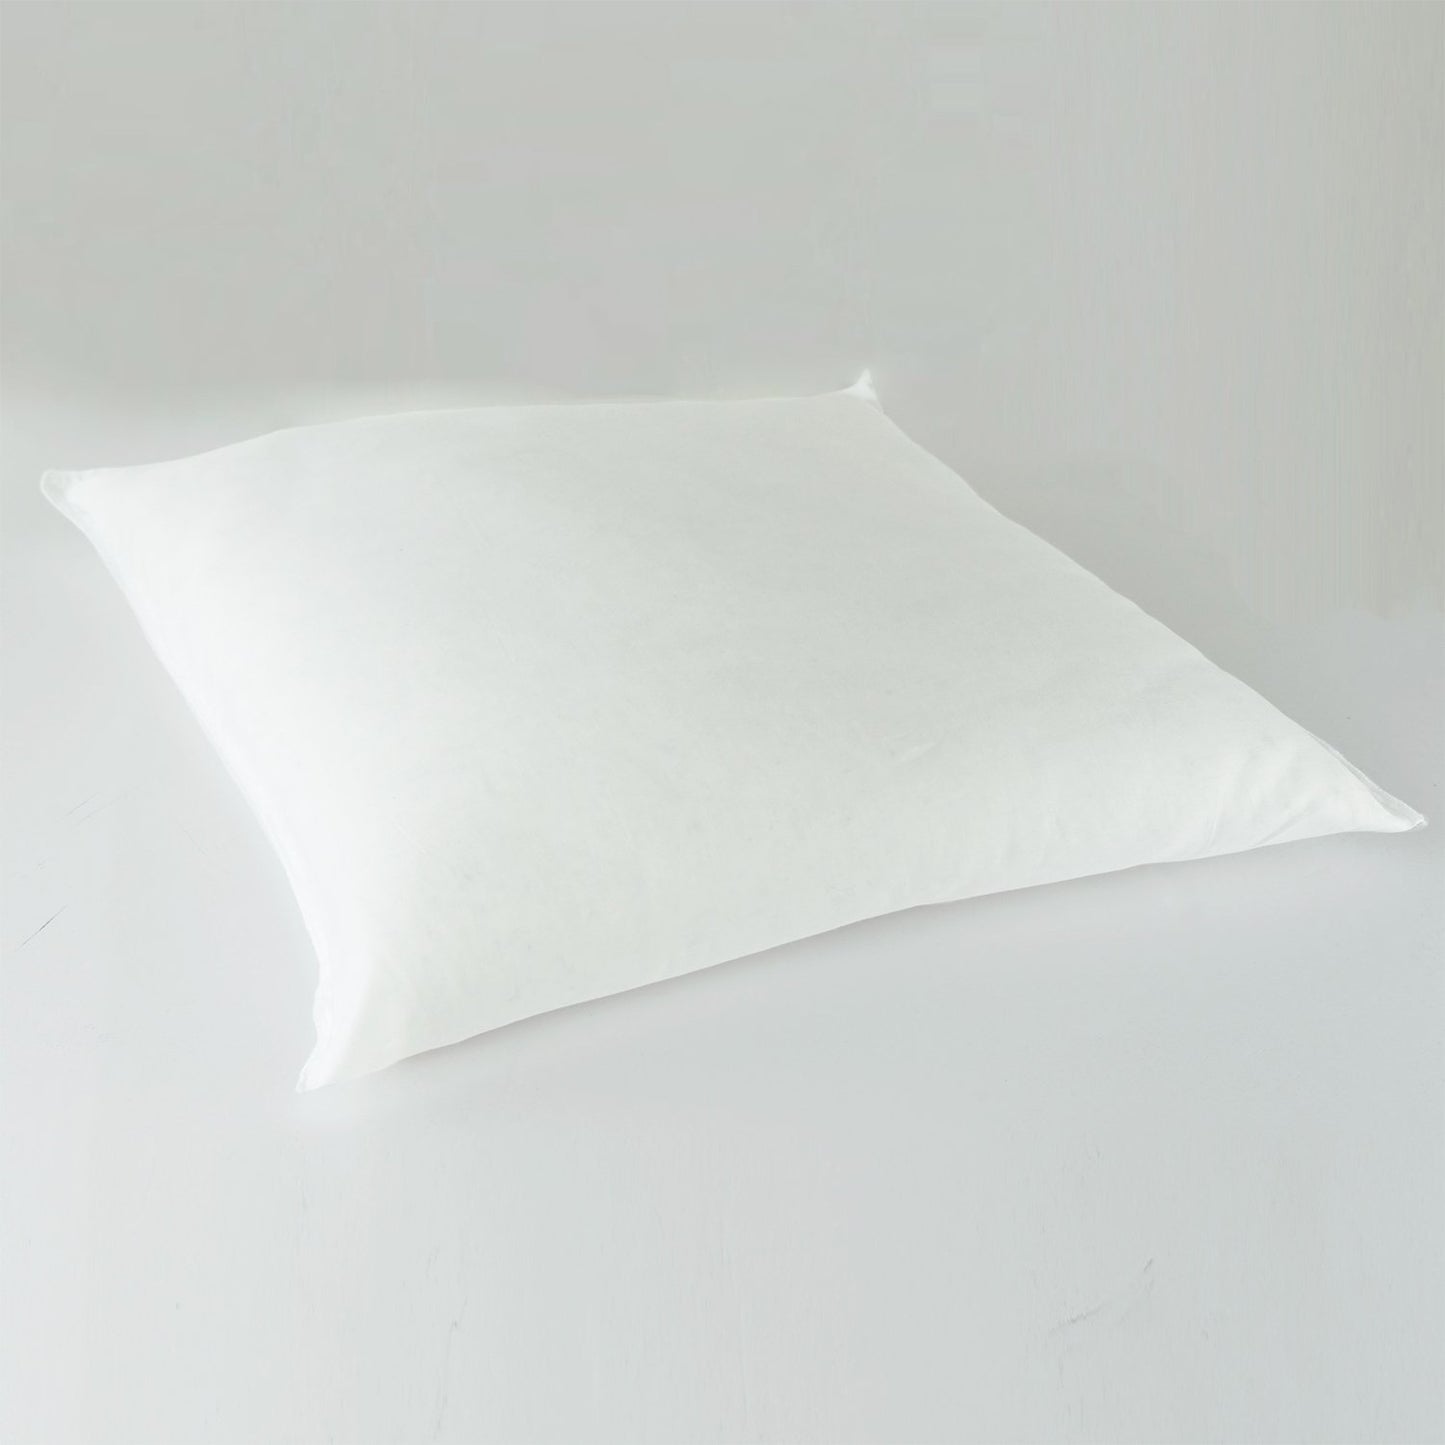 J-Life Seikai Ha Orange Zabuton Floor Pillow_Pillows & Shams_Zabuton Floor Pillows_100% Cotton_Reversible